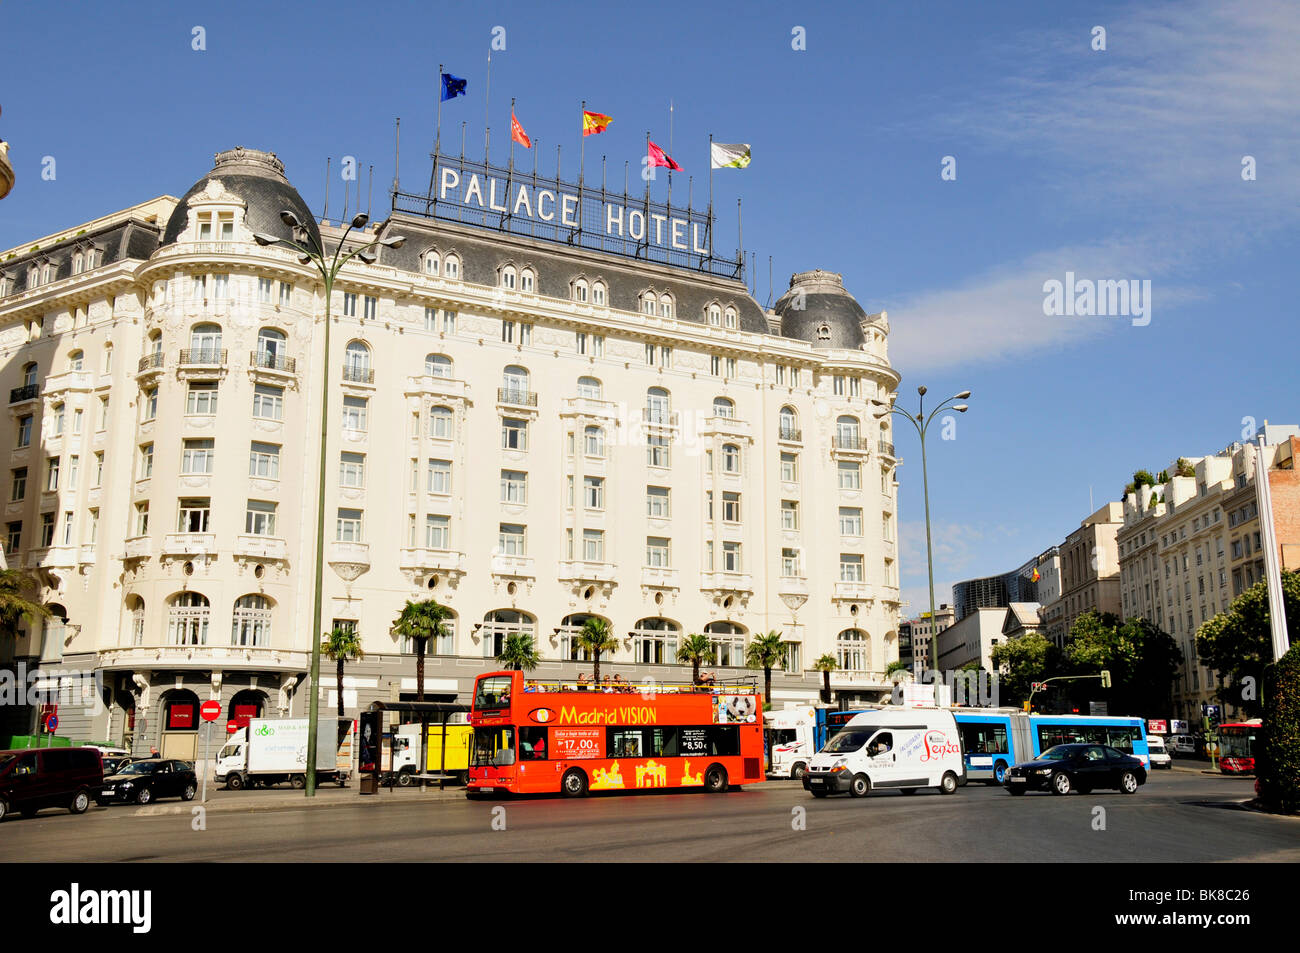 Bus touristique en face de l'Hôtel Palace, Madrid, Espagne, Péninsule ibérique, Europe Banque D'Images